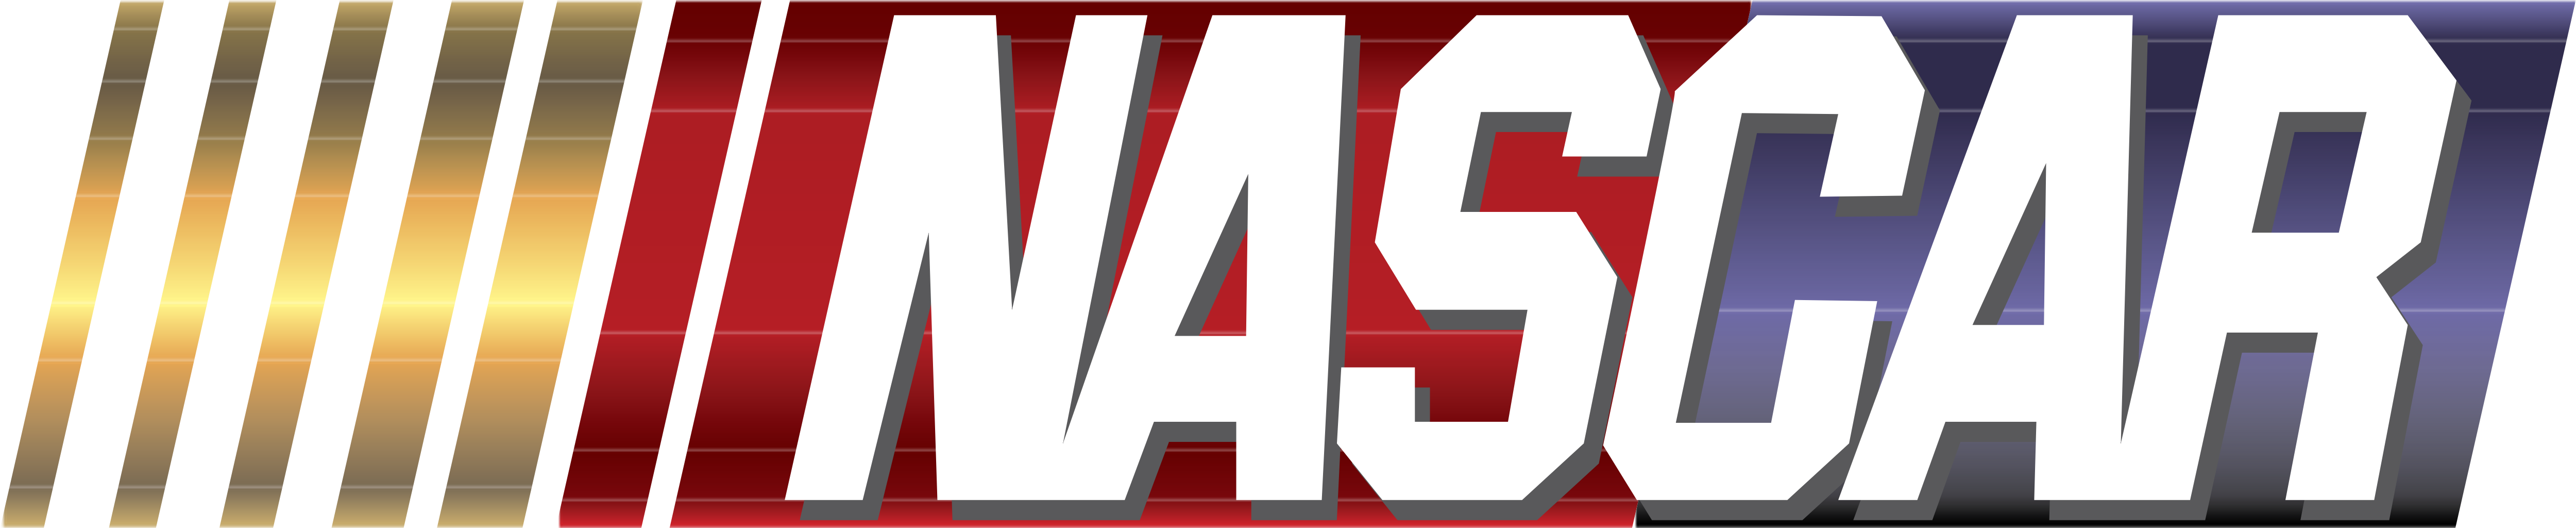 NASCAR - Logos Download